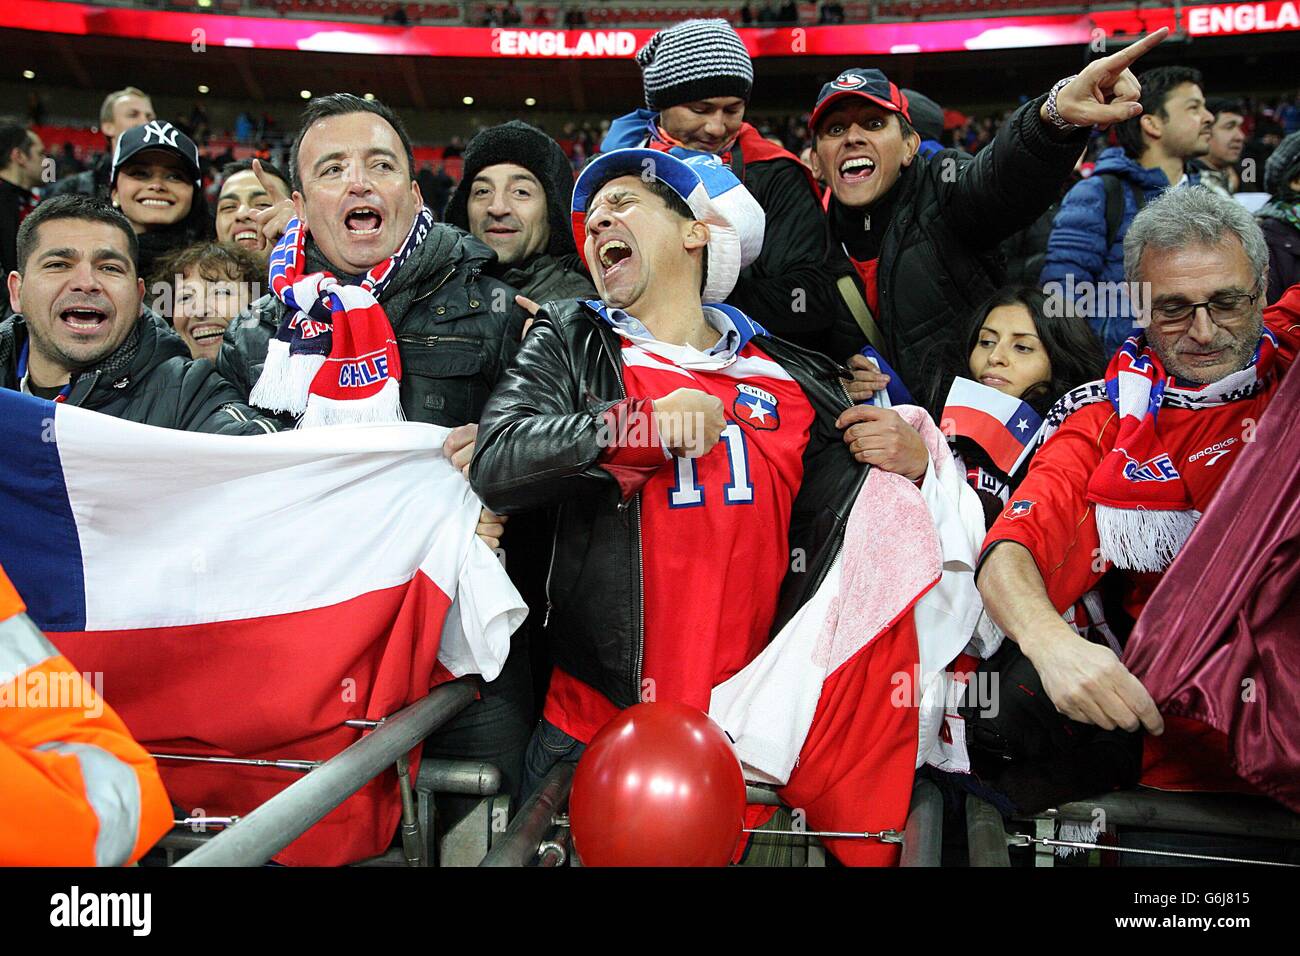 Calcio - International friendly - Inghilterra / Cile - Stadio di Wembley. I tifosi cileni festeggiano negli stand Foto Stock